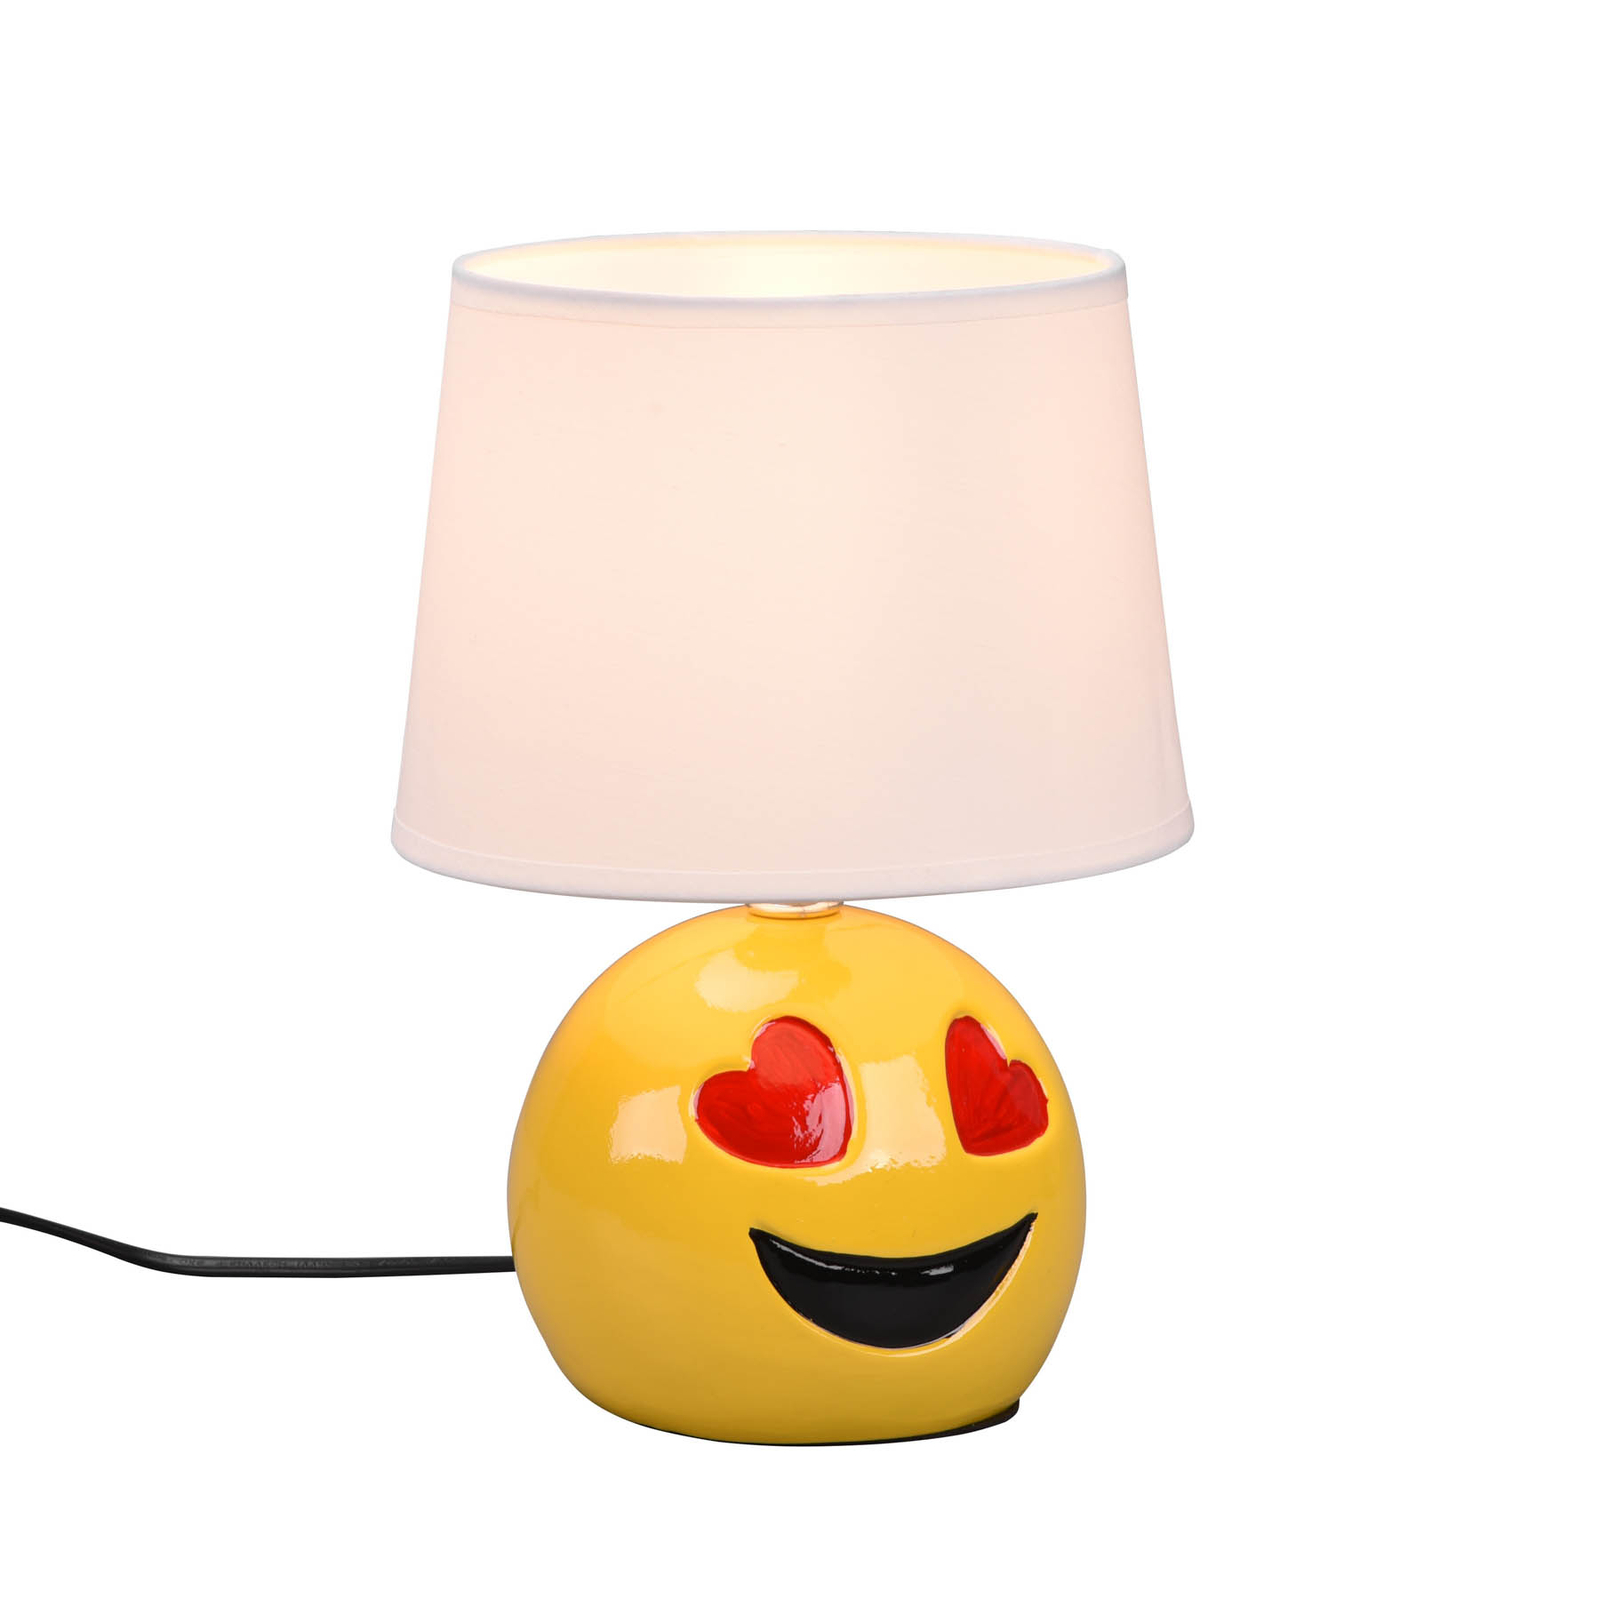 Tafellamp Lovely met Smiley, stoffen kap wit